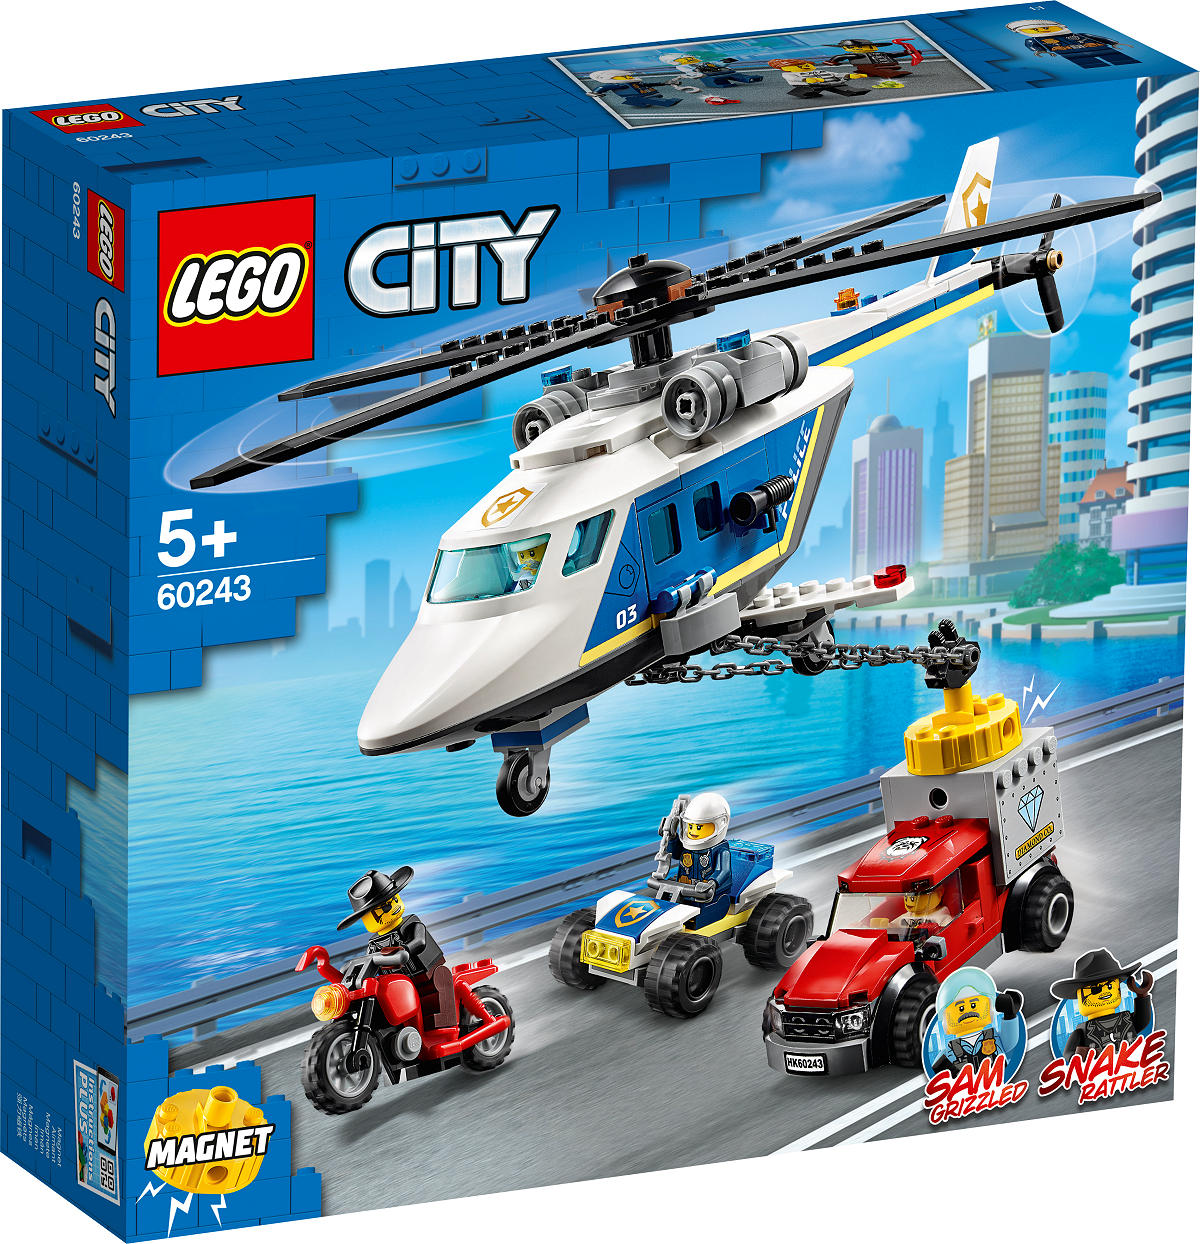 60243 LEGO City Politie Politiehelikopter achtervolging